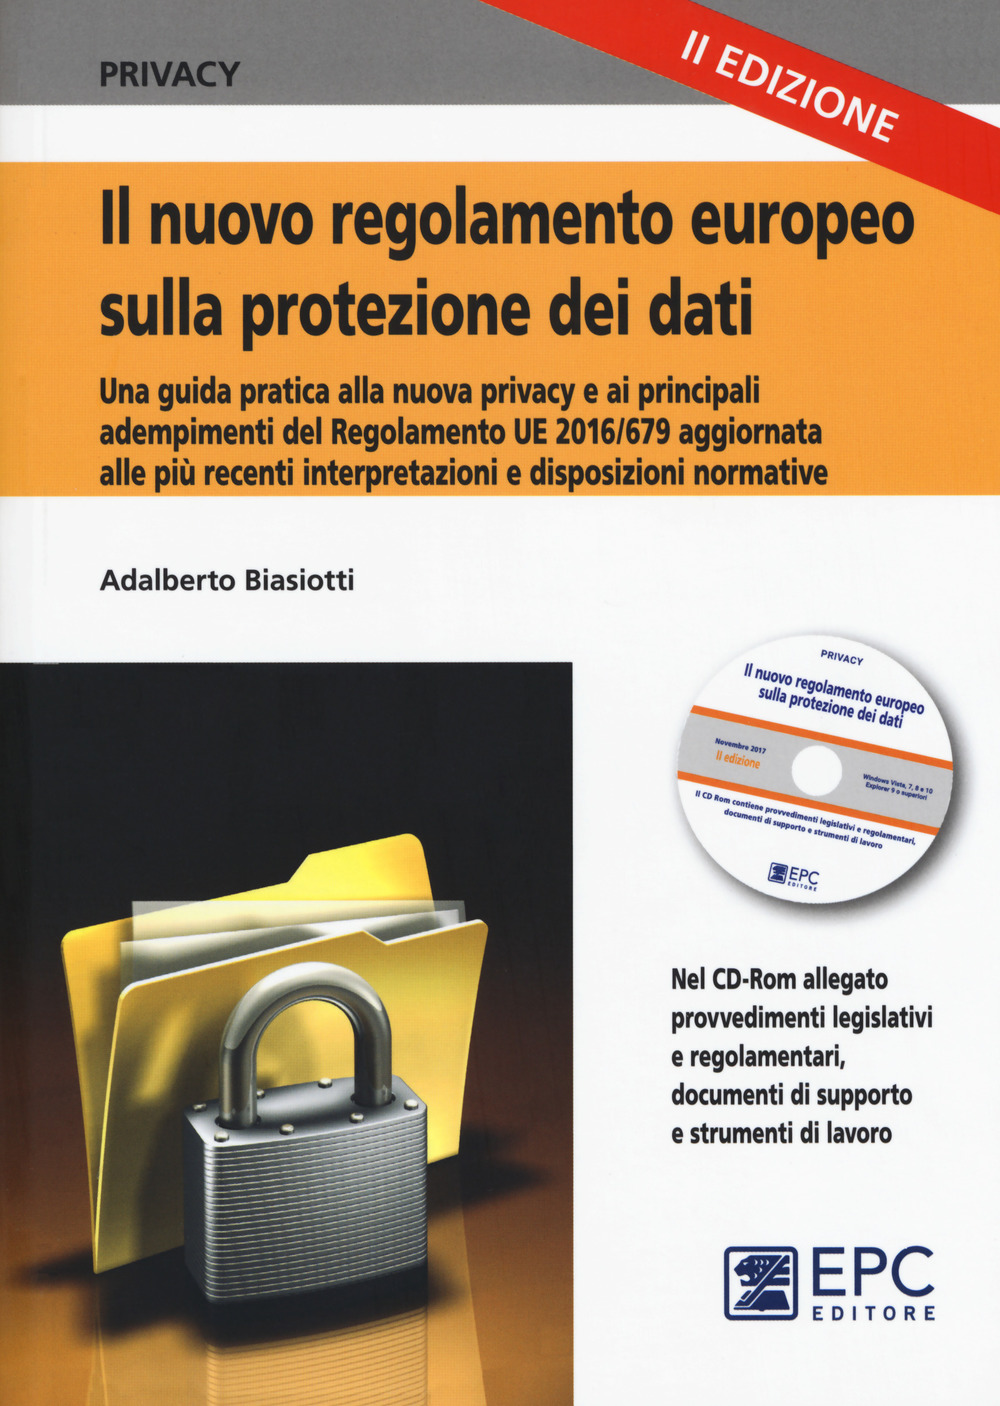 Il nuovo regolamento europeo sulla protezione dei dati. Una guida pratica alla nuova privacy e ai principali adempimenti del Regolamento UE 2016/679, aggiornata alle più recenti disposizioni e interpretazioni normative. Nuova ediz. Con CD-ROM. Con Contenu